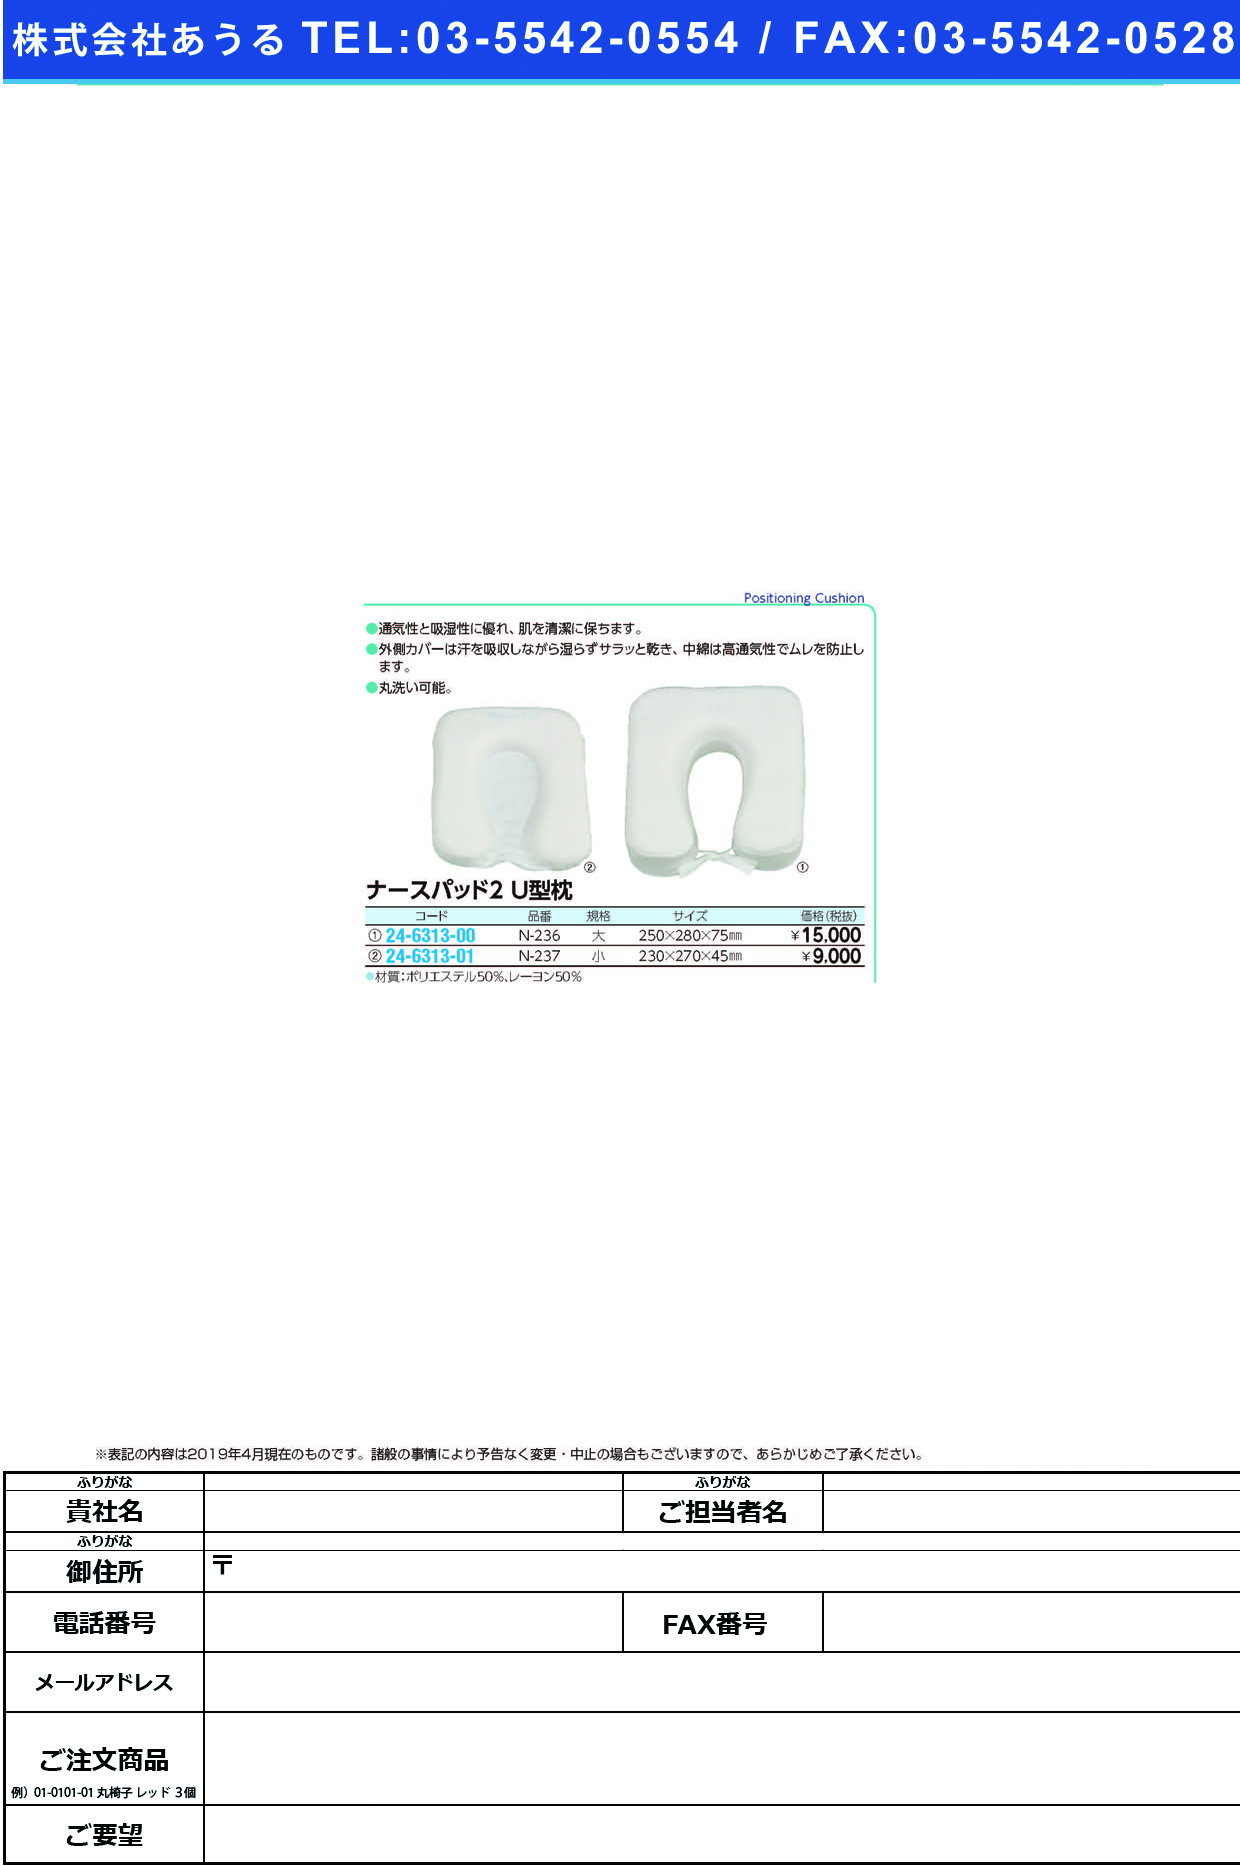 (24-6313-00)ナースパット２Ｕ型枕 N-236(ﾀﾞｲ) ﾅｰｽﾊﾟｯﾄ2Uｶﾞﾀﾏｸﾗ【1個単位】【2019年カタログ商品】